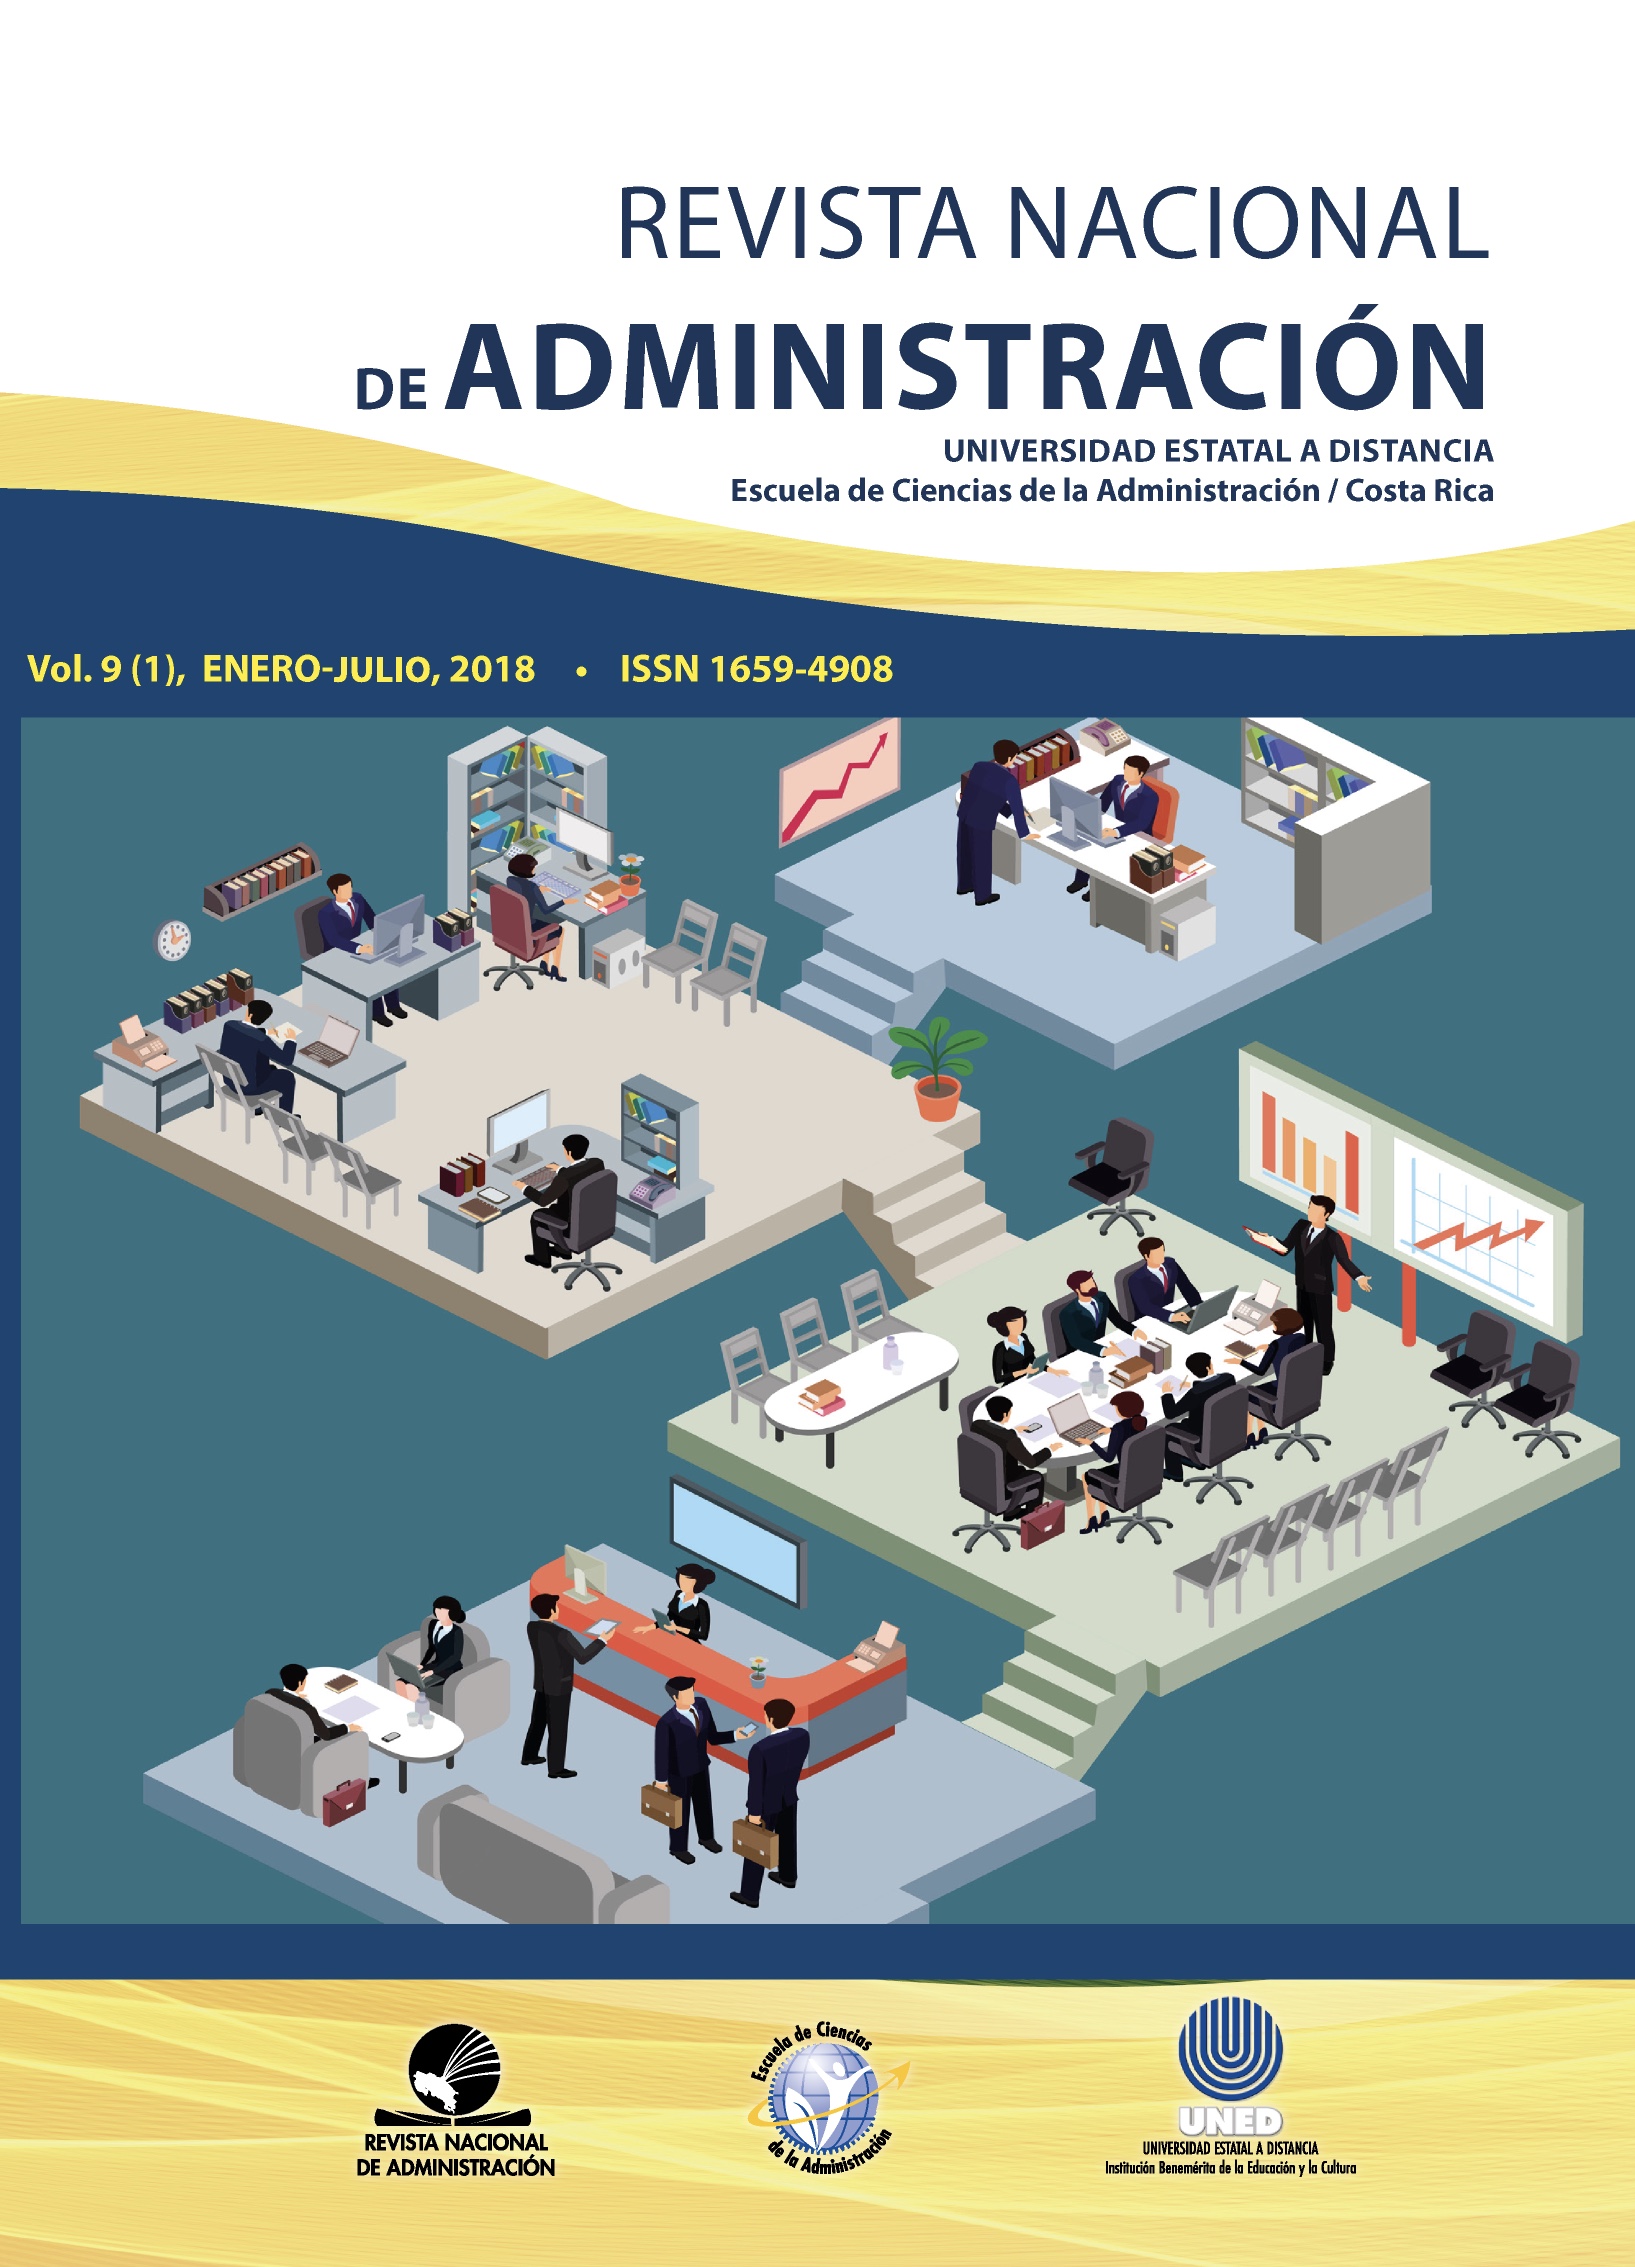 					View Vol. 9 No. 1 (2018): Revista Nacional de Administración
				